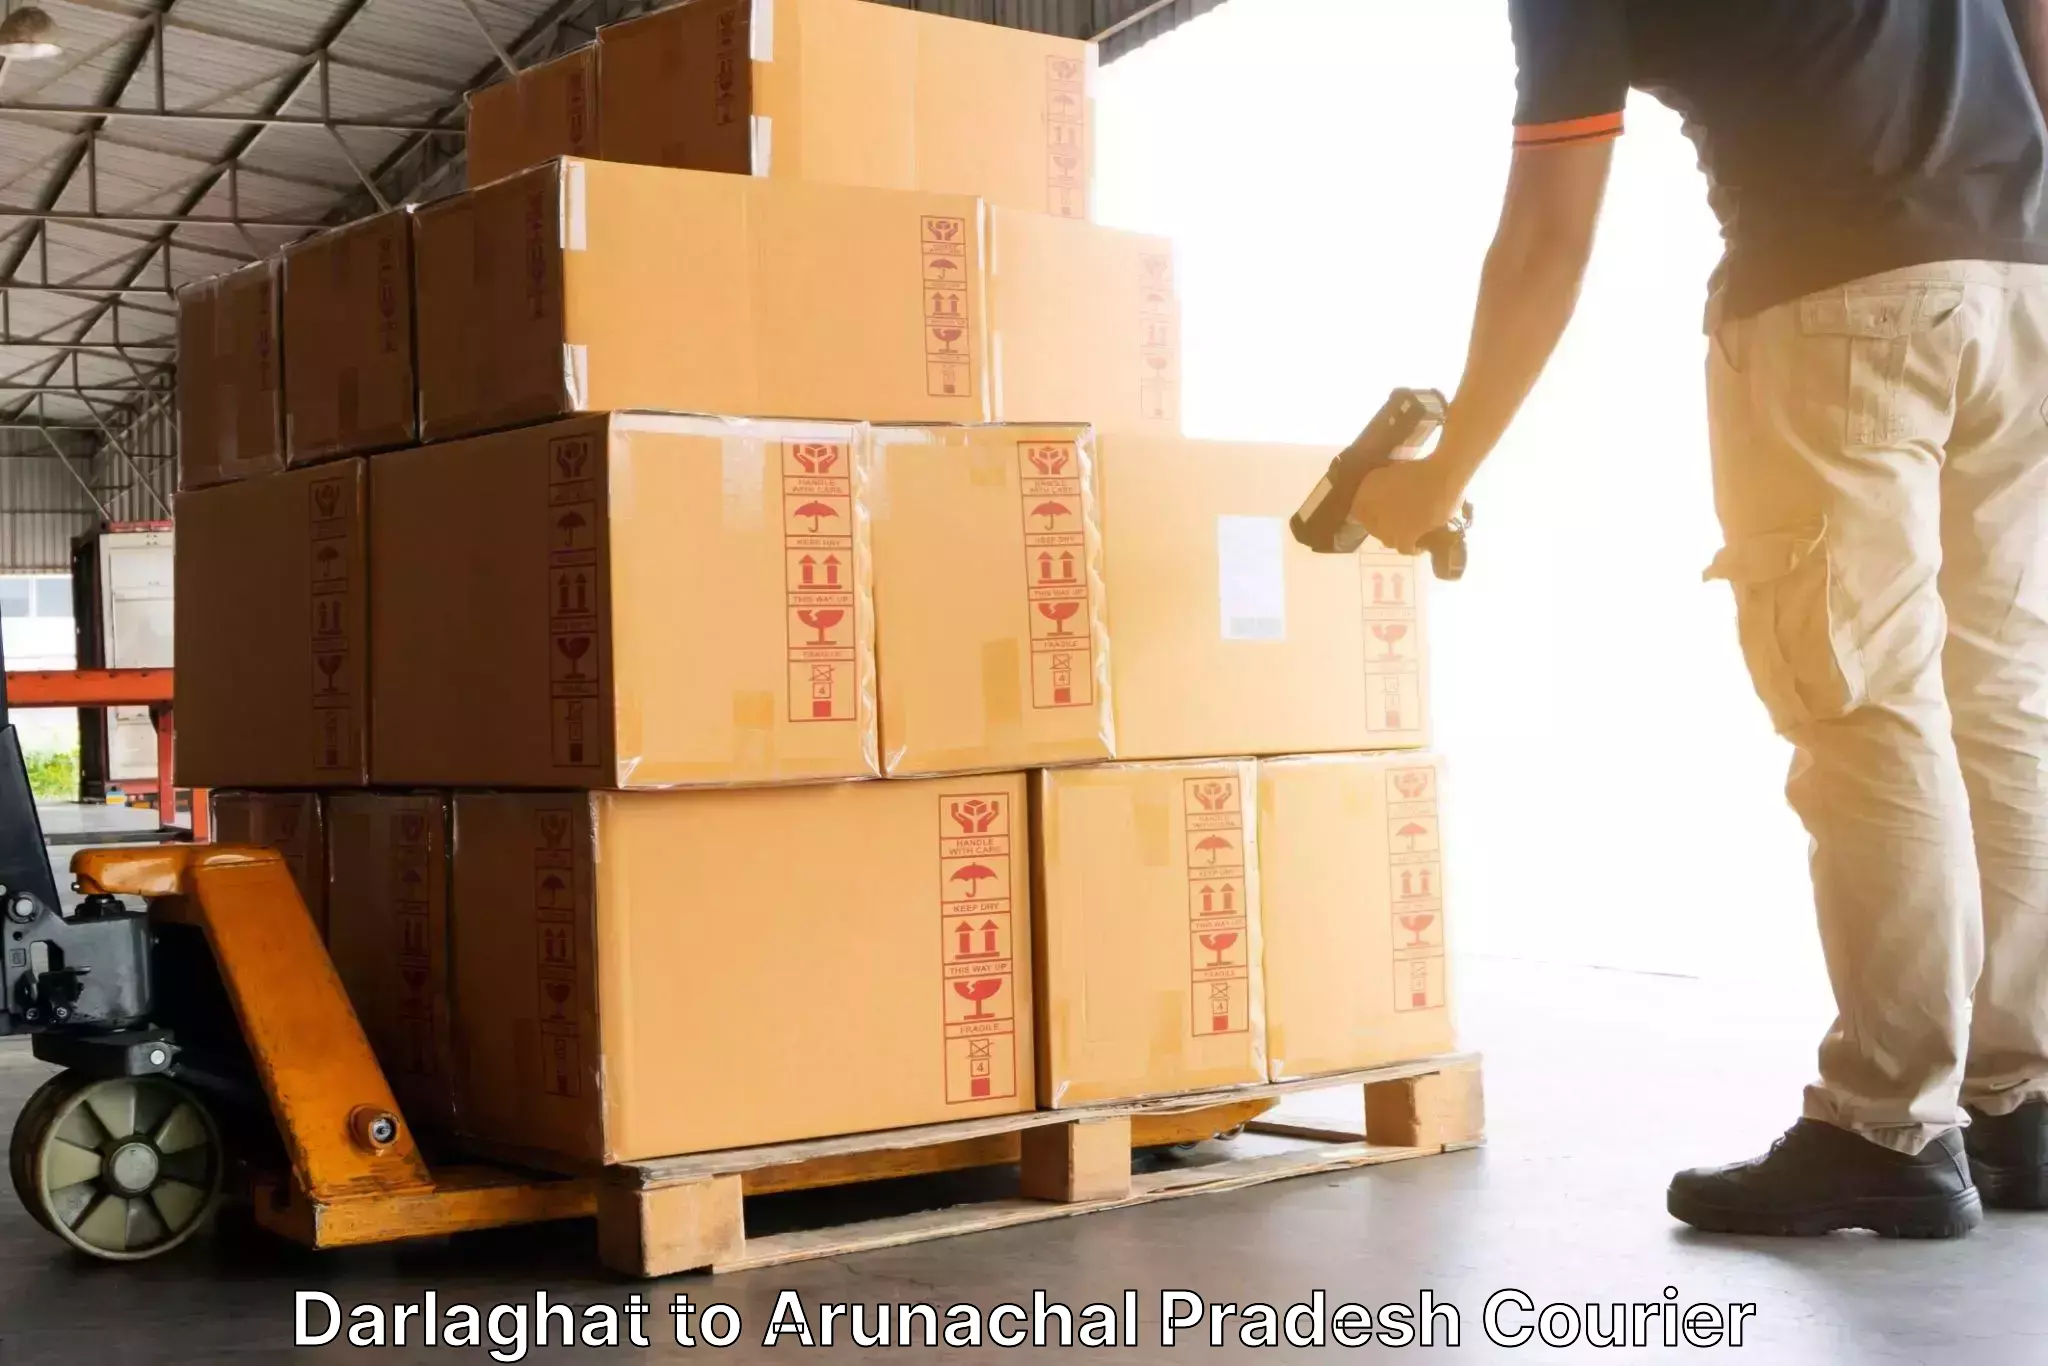 Efficient cargo handling Darlaghat to Arunachal Pradesh